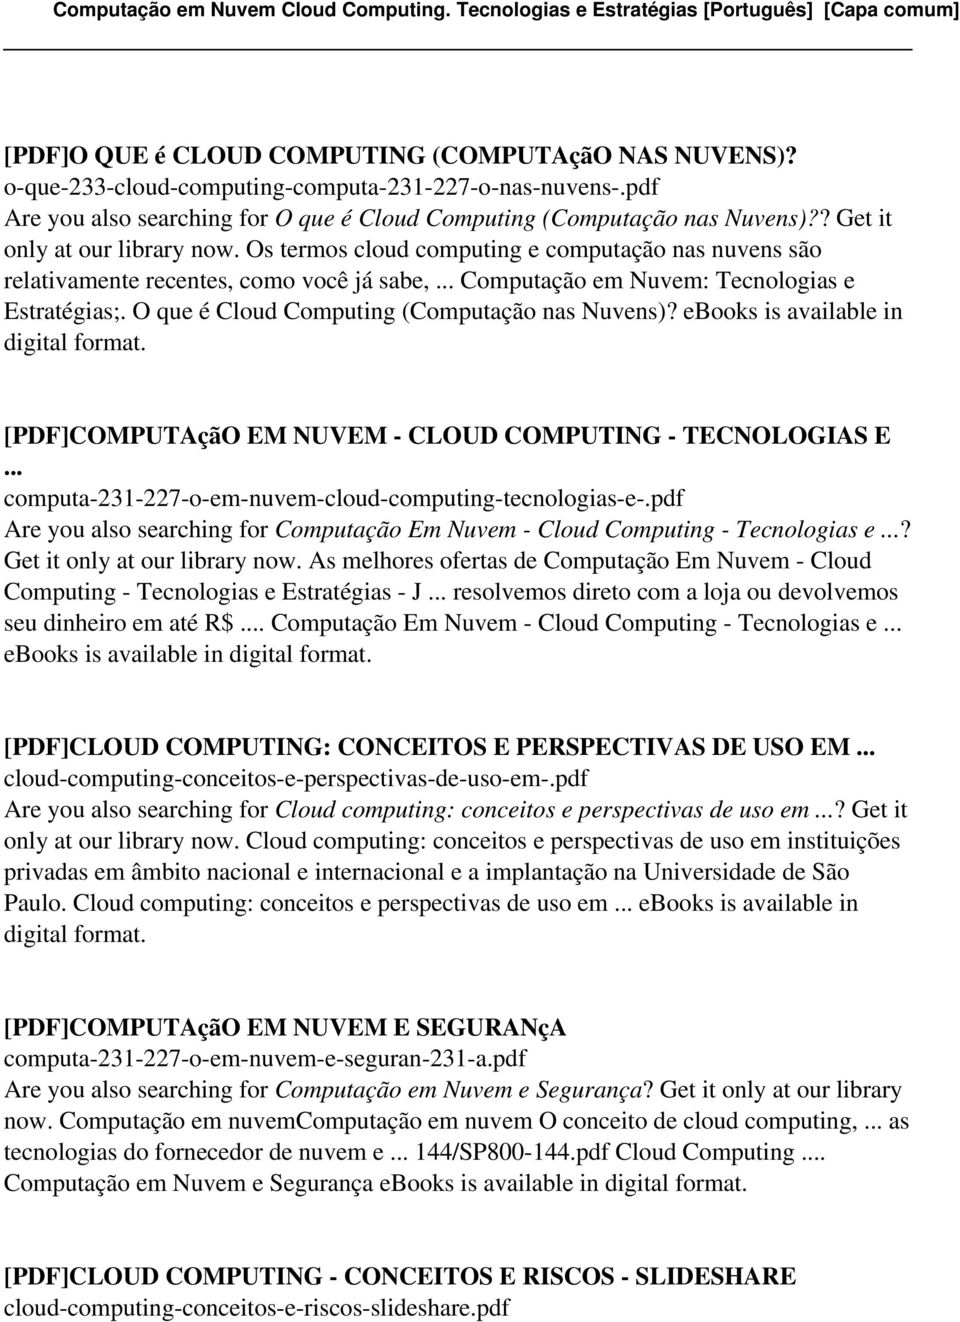 O que é Cloud Computing (Computação nas Nuvens)? ebooks is available in [PDF]COMPUTAçãO EM NUVEM - CLOUD COMPUTING - TECNOLOGIAS E... computa-231-227-o-em-nuvem-cloud-computing-tecnologias-e-.